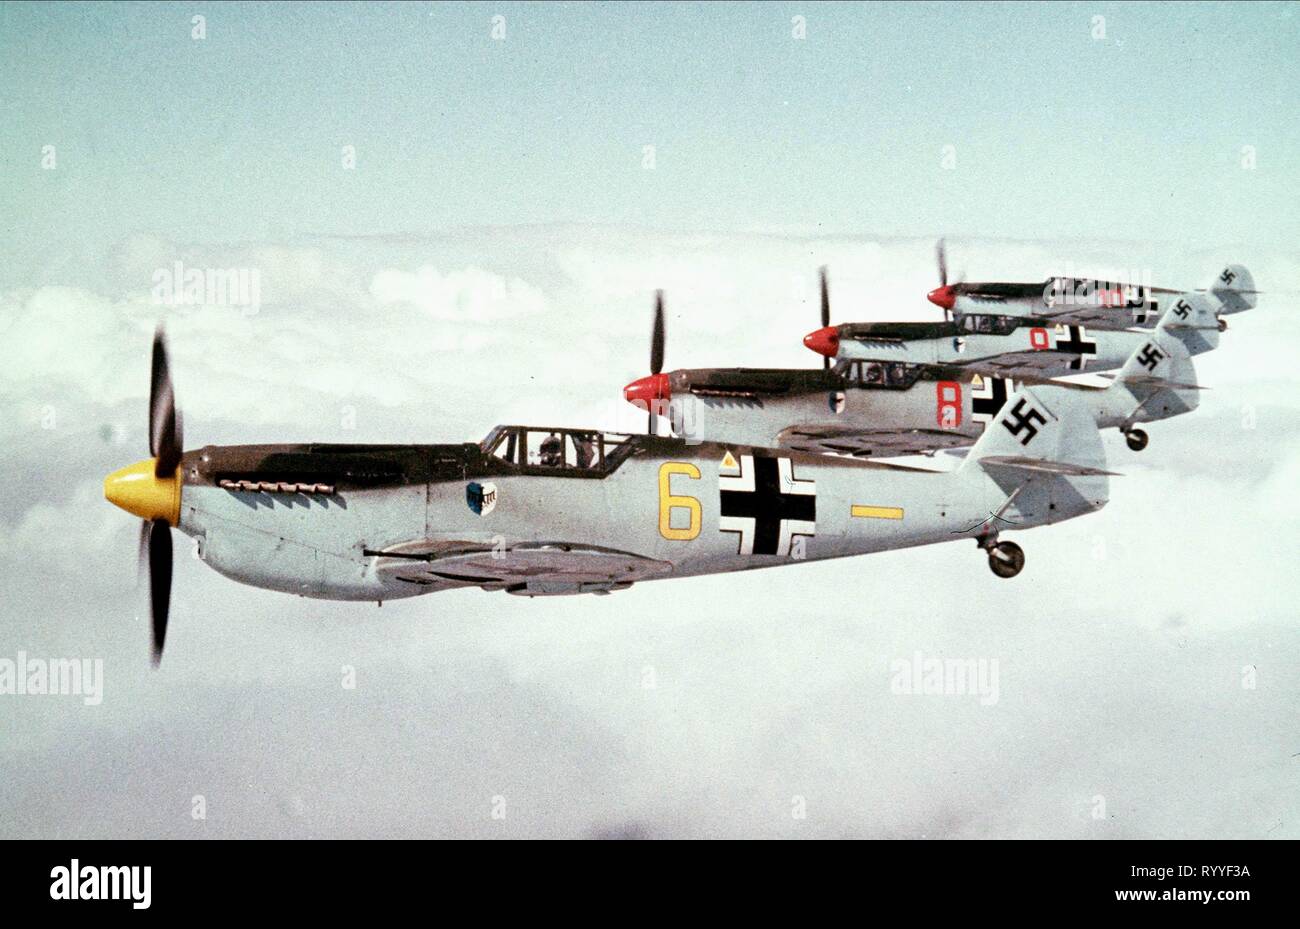 Le jour le plus long Messerschmitt-me-109-bataille-d-angleterre-1969-ryyf3a